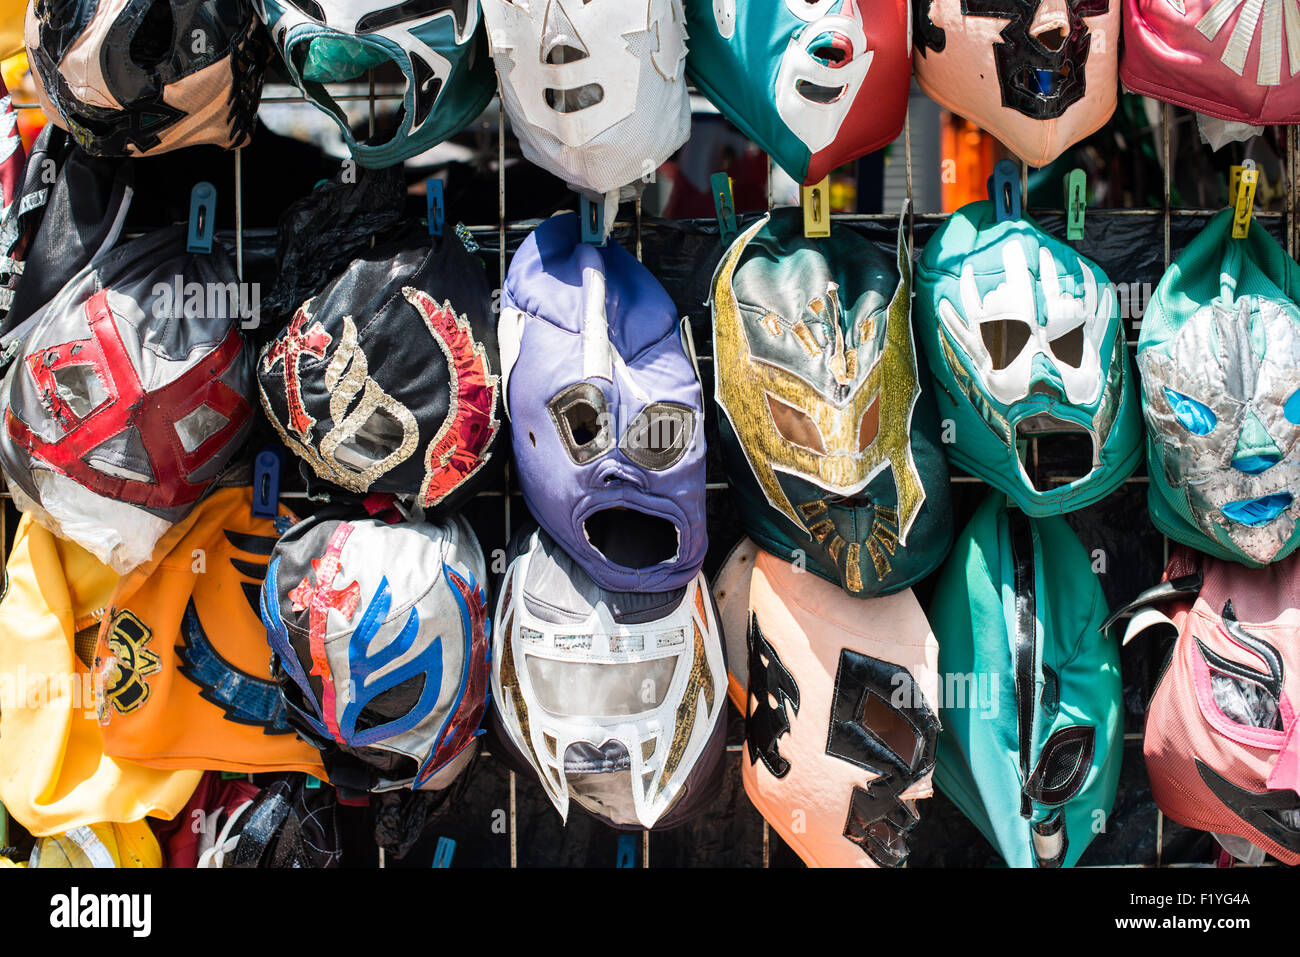 La VILLE DE MEXICO, MEXIQUE - Costume masques dans le basque de Chapultepec, un grand parc public et populaire dans le centre de Mexico. Banque D'Images